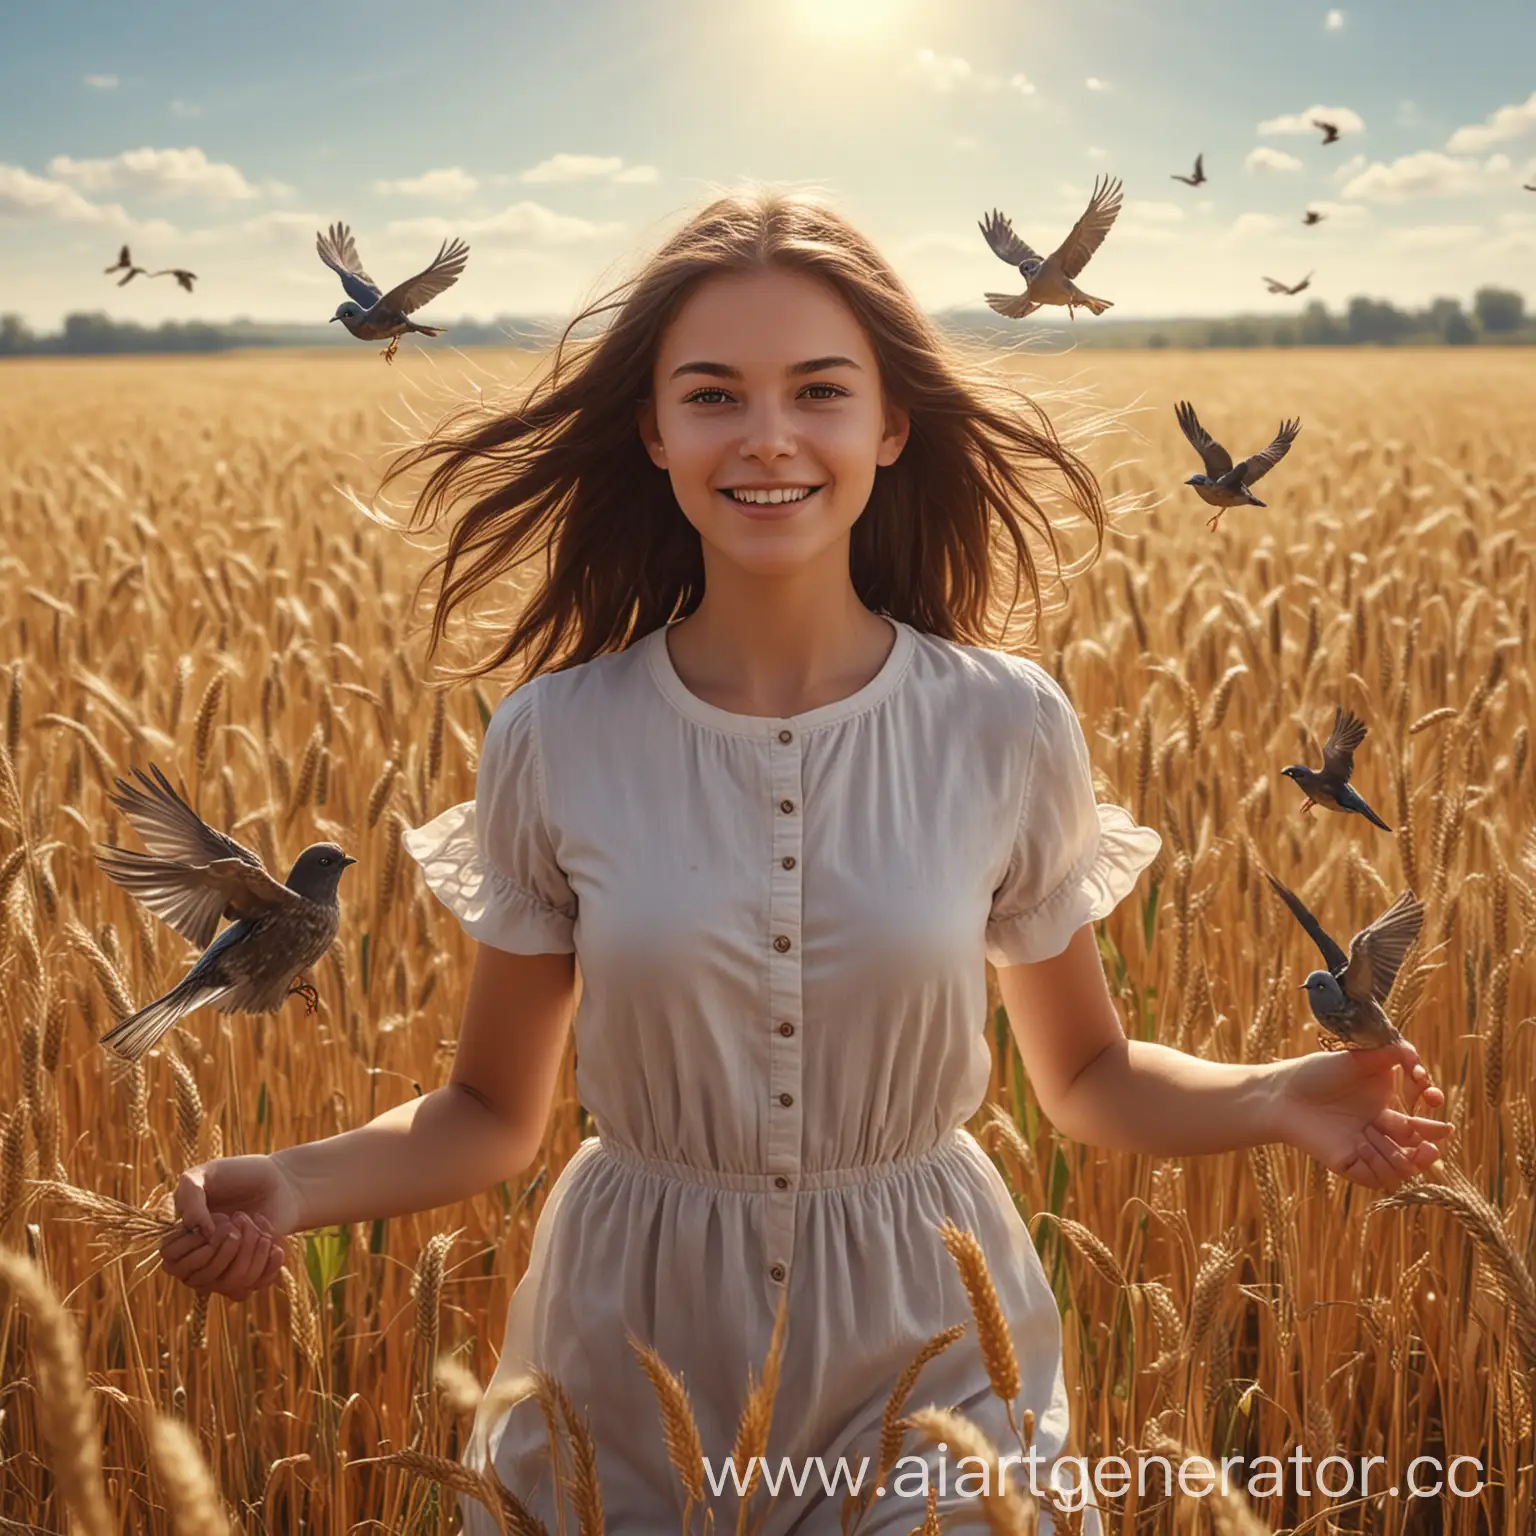 Девушка брюнетка Веган  похожую на фото с картинки, в поле среди ростков пшеницы, яркий солнечный свет, летают милые маленькие птички, фотореализм